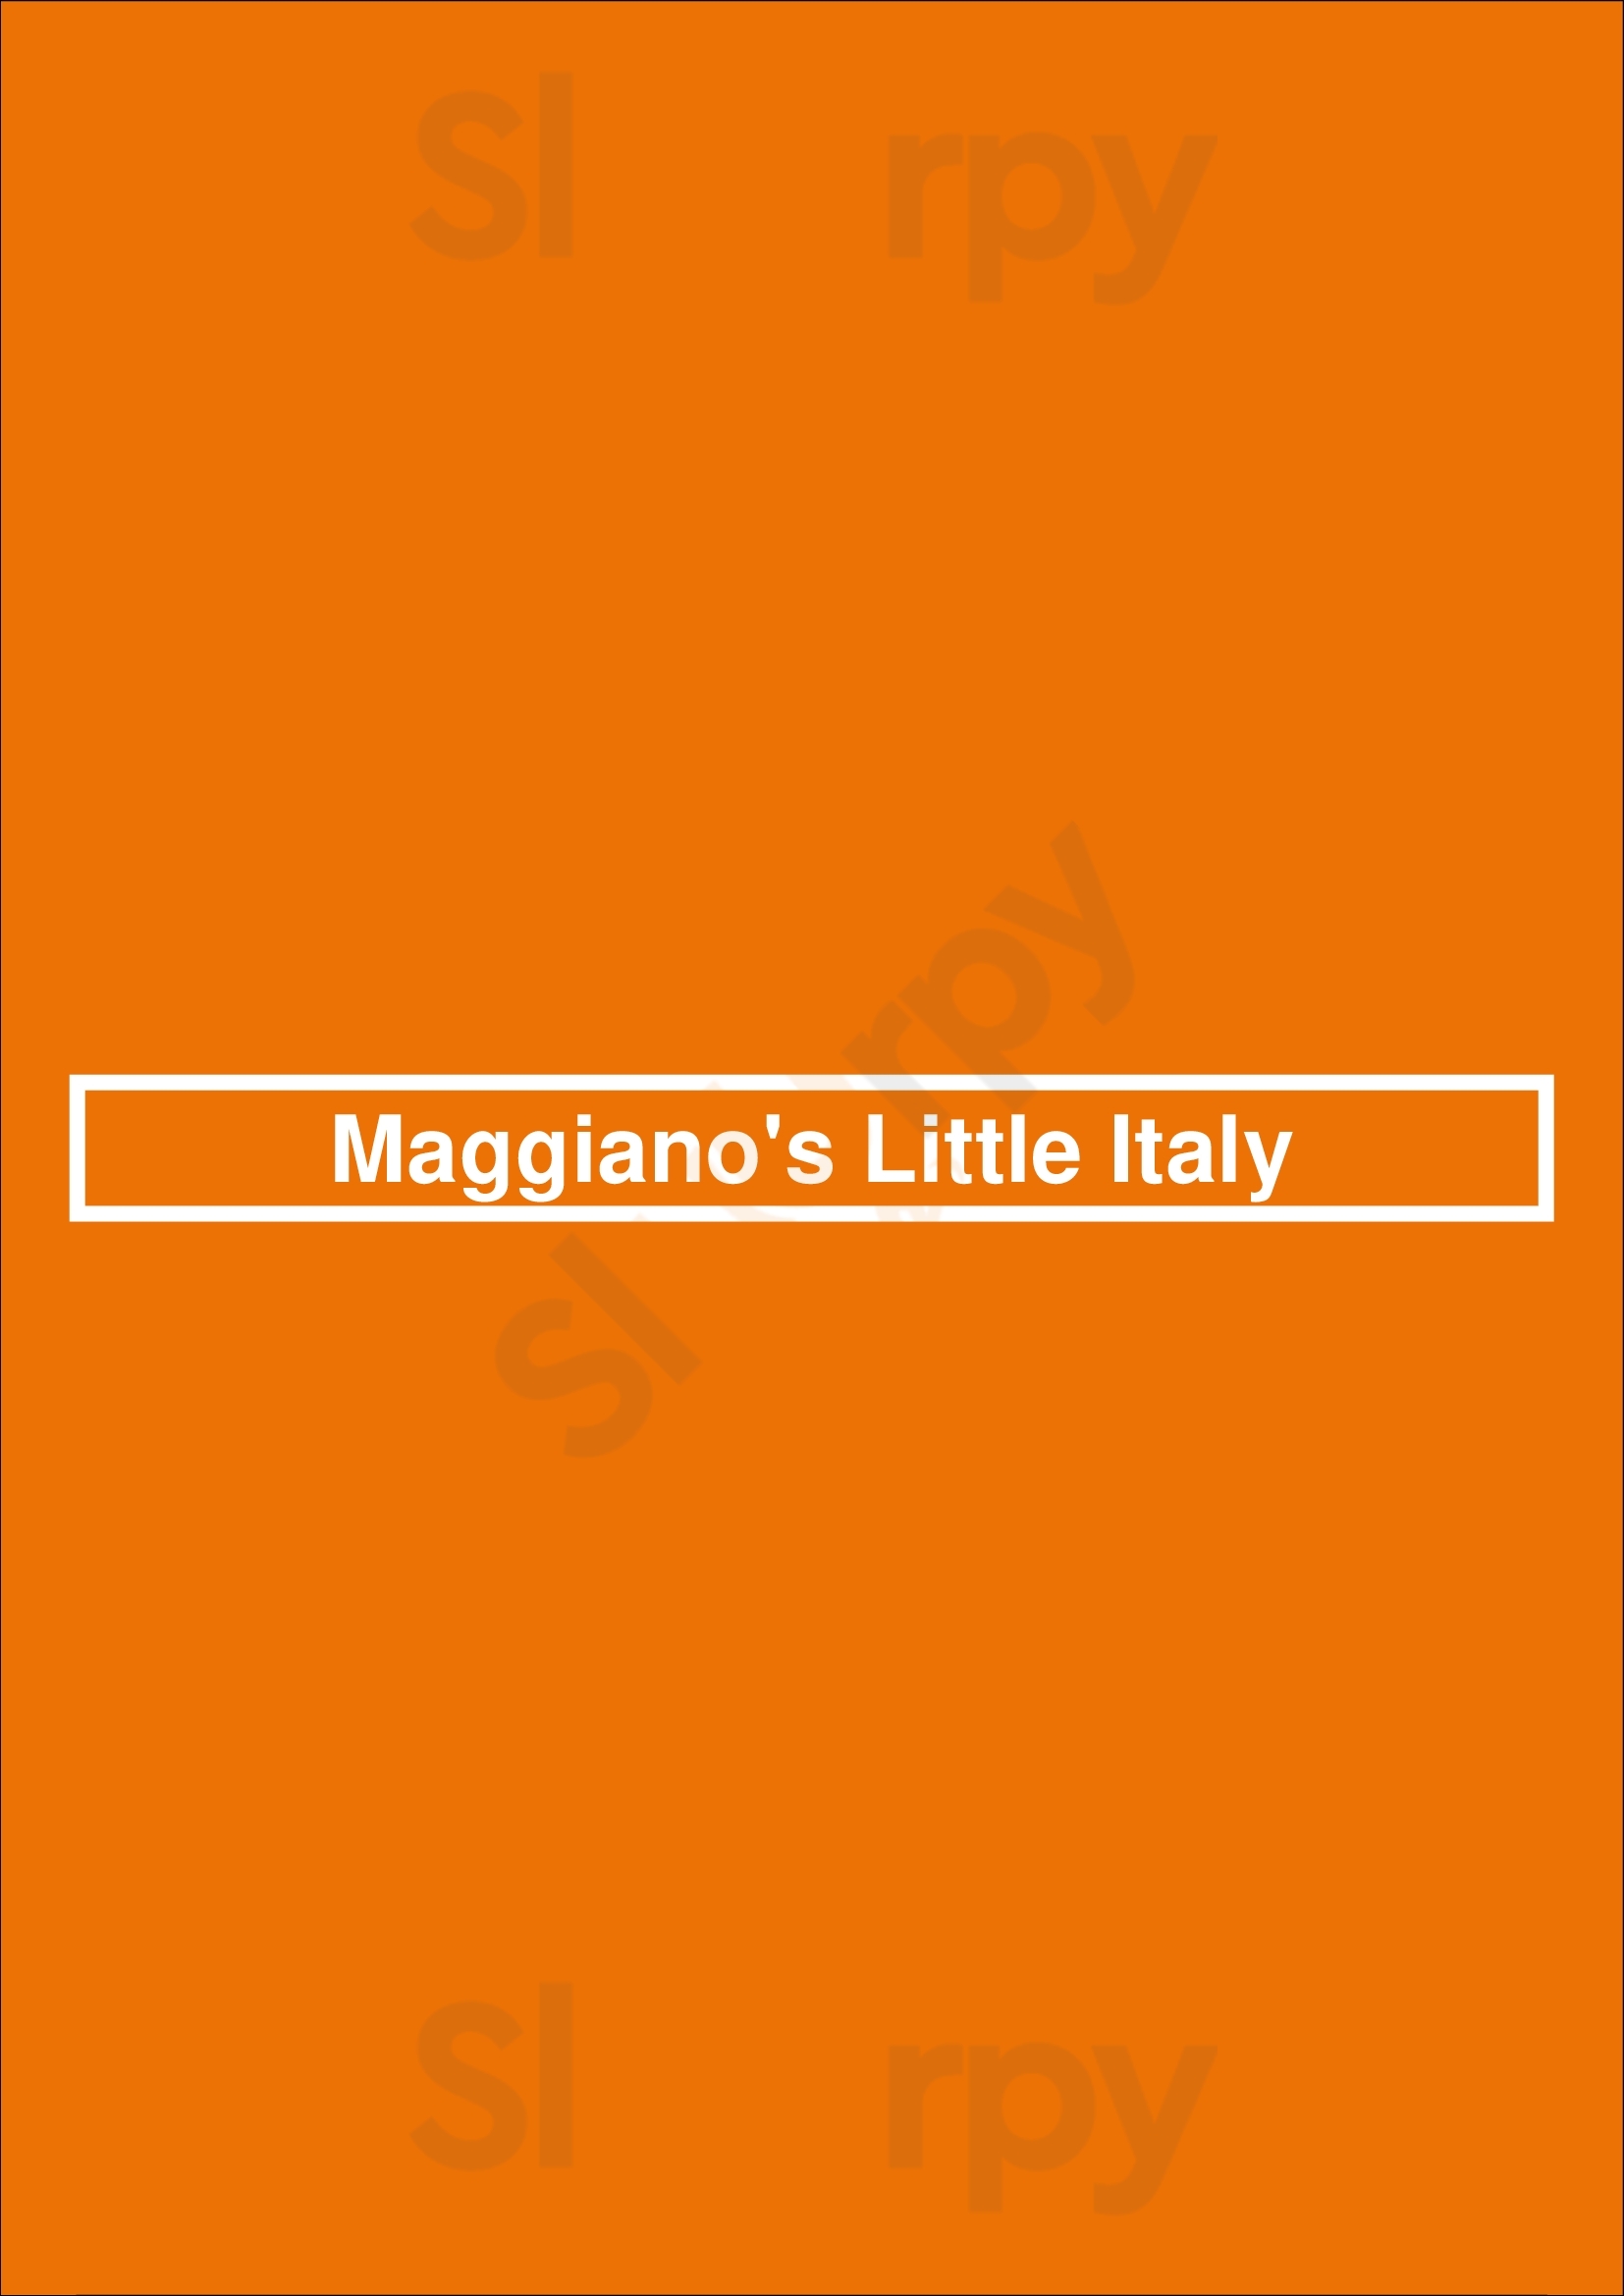 Maggiano's Little Italy Dallas Menu - 1